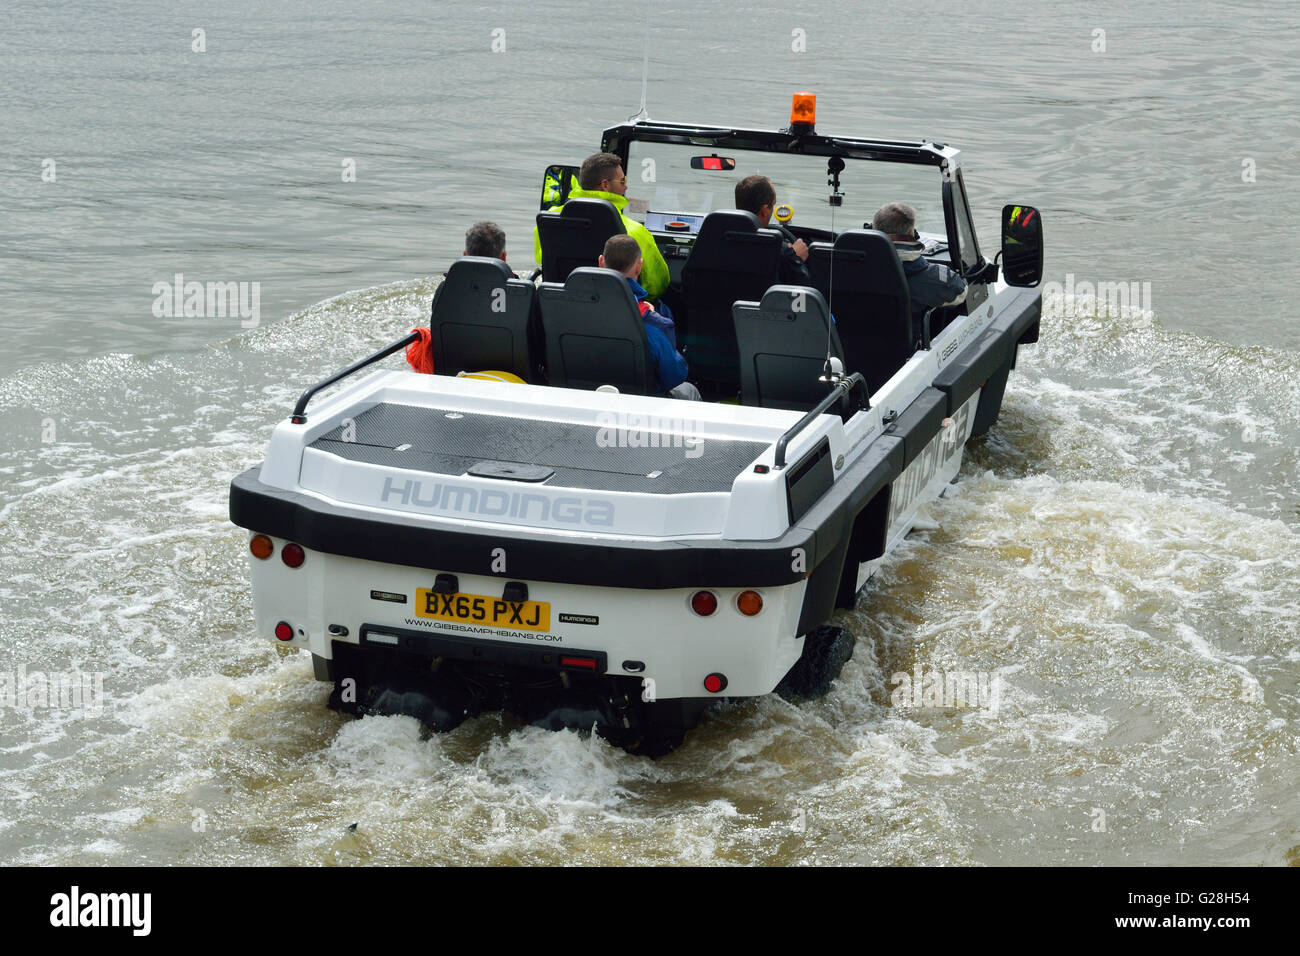 Les Amphibiens Gibbs amphibie véhicule utilitaire Hundinga en cours d'essais sur la Tamise à Londres Banque D'Images